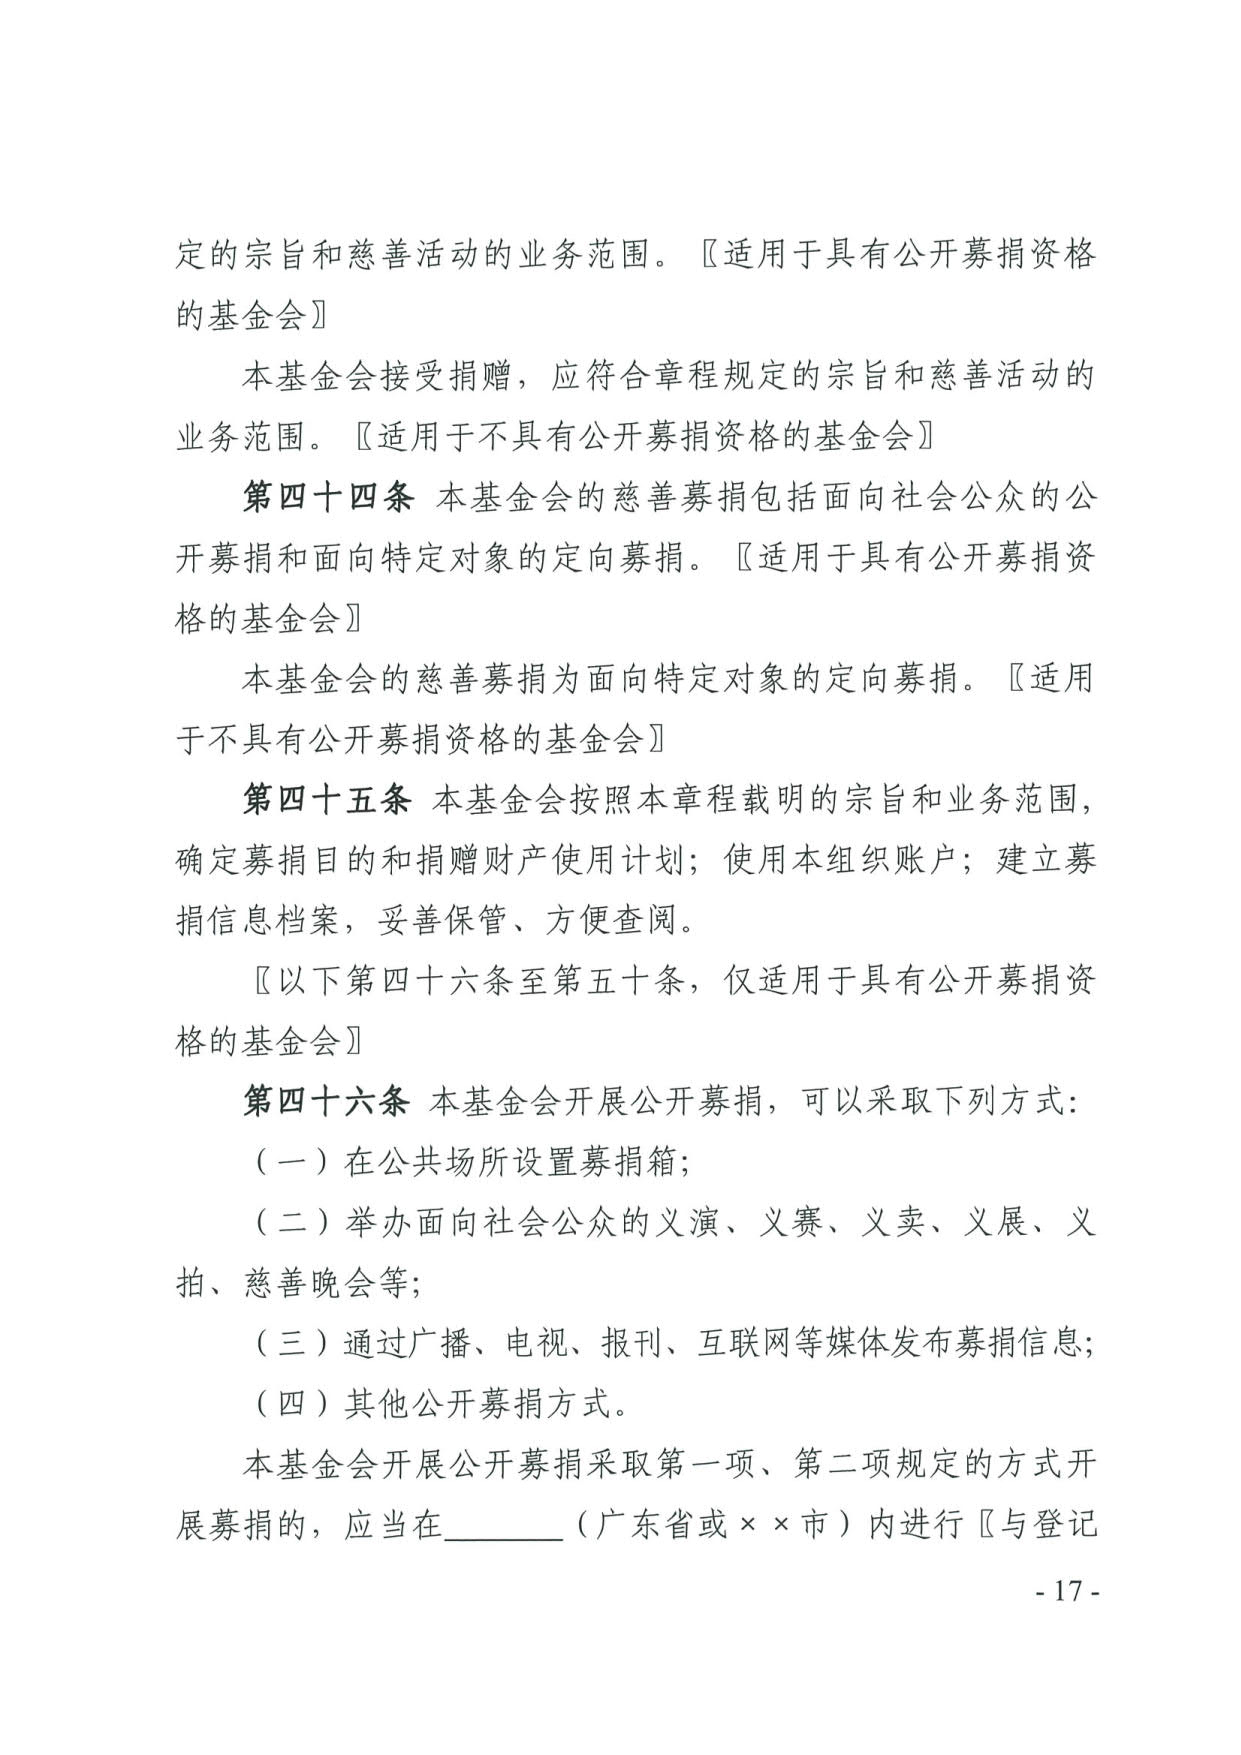 广东省民政厅关于印发《广东省基金会章程示范文本》的通知(4)_17.jpg